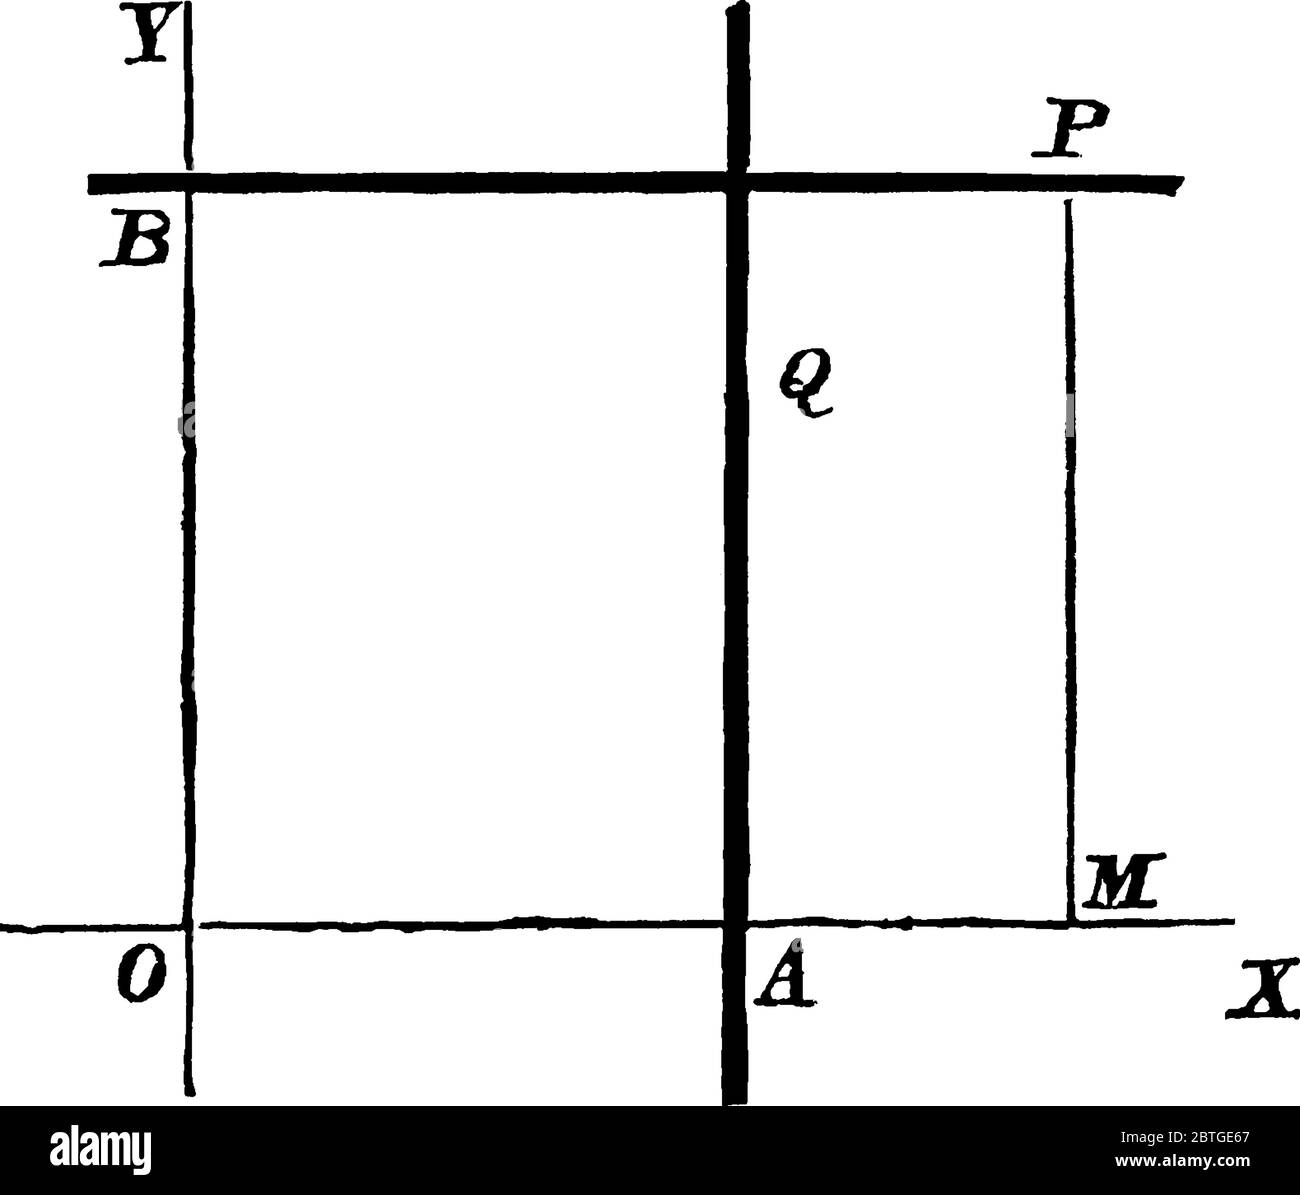 L'equazione generale di una linea retta è y = mx + c, dove m è il gradiente, e y = c è il valore in cui la linea taglia l'asse y, linea vintage dr Illustrazione Vettoriale